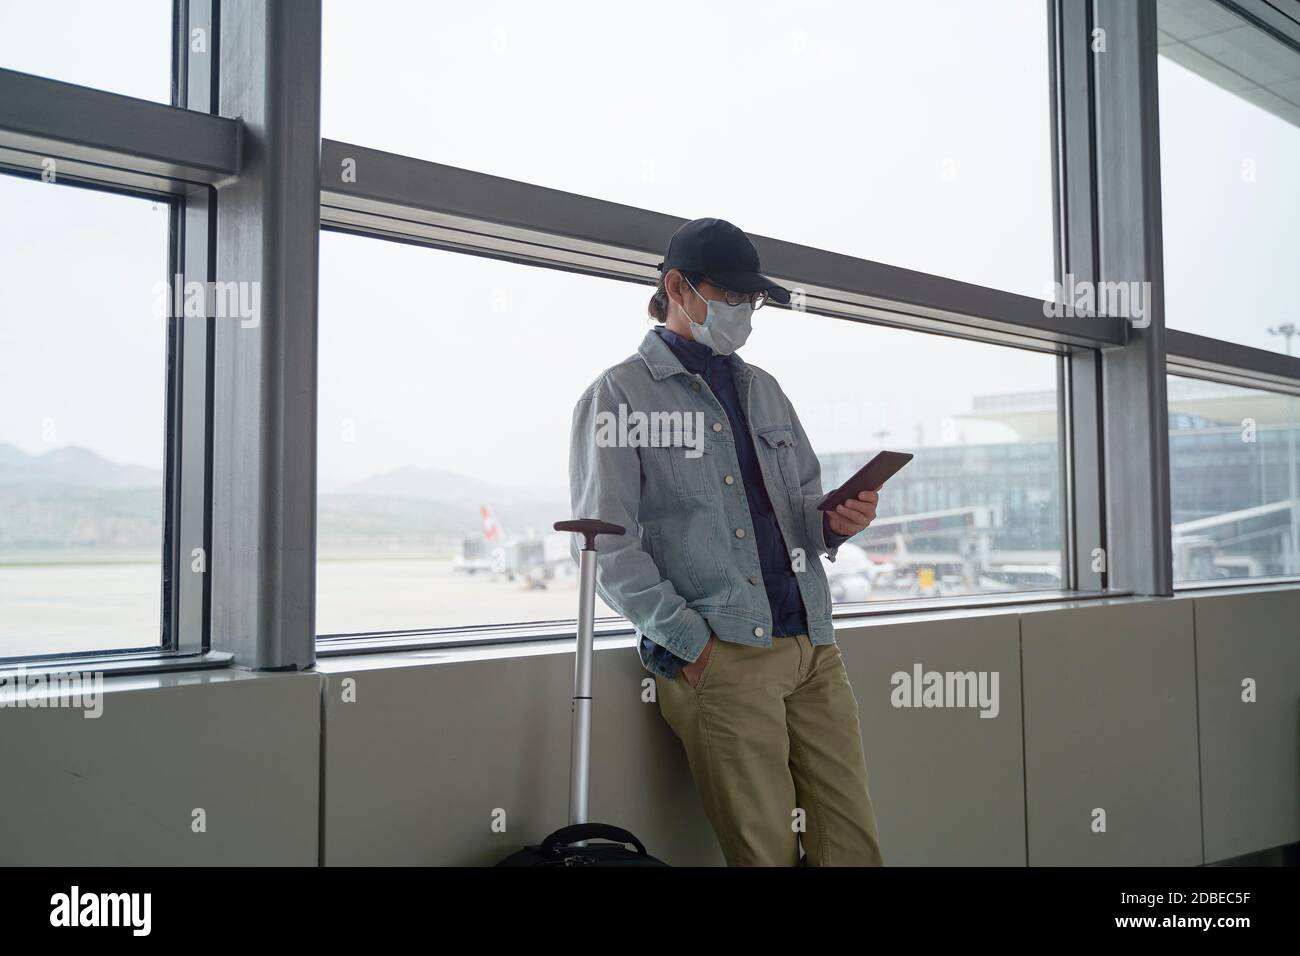 jeune homme asiatique homme voyageur de l'air lisant e-livre en utilisant un lecteur électronique en attente d'embarquement dans le terminal de l'aéroport Banque D'Images